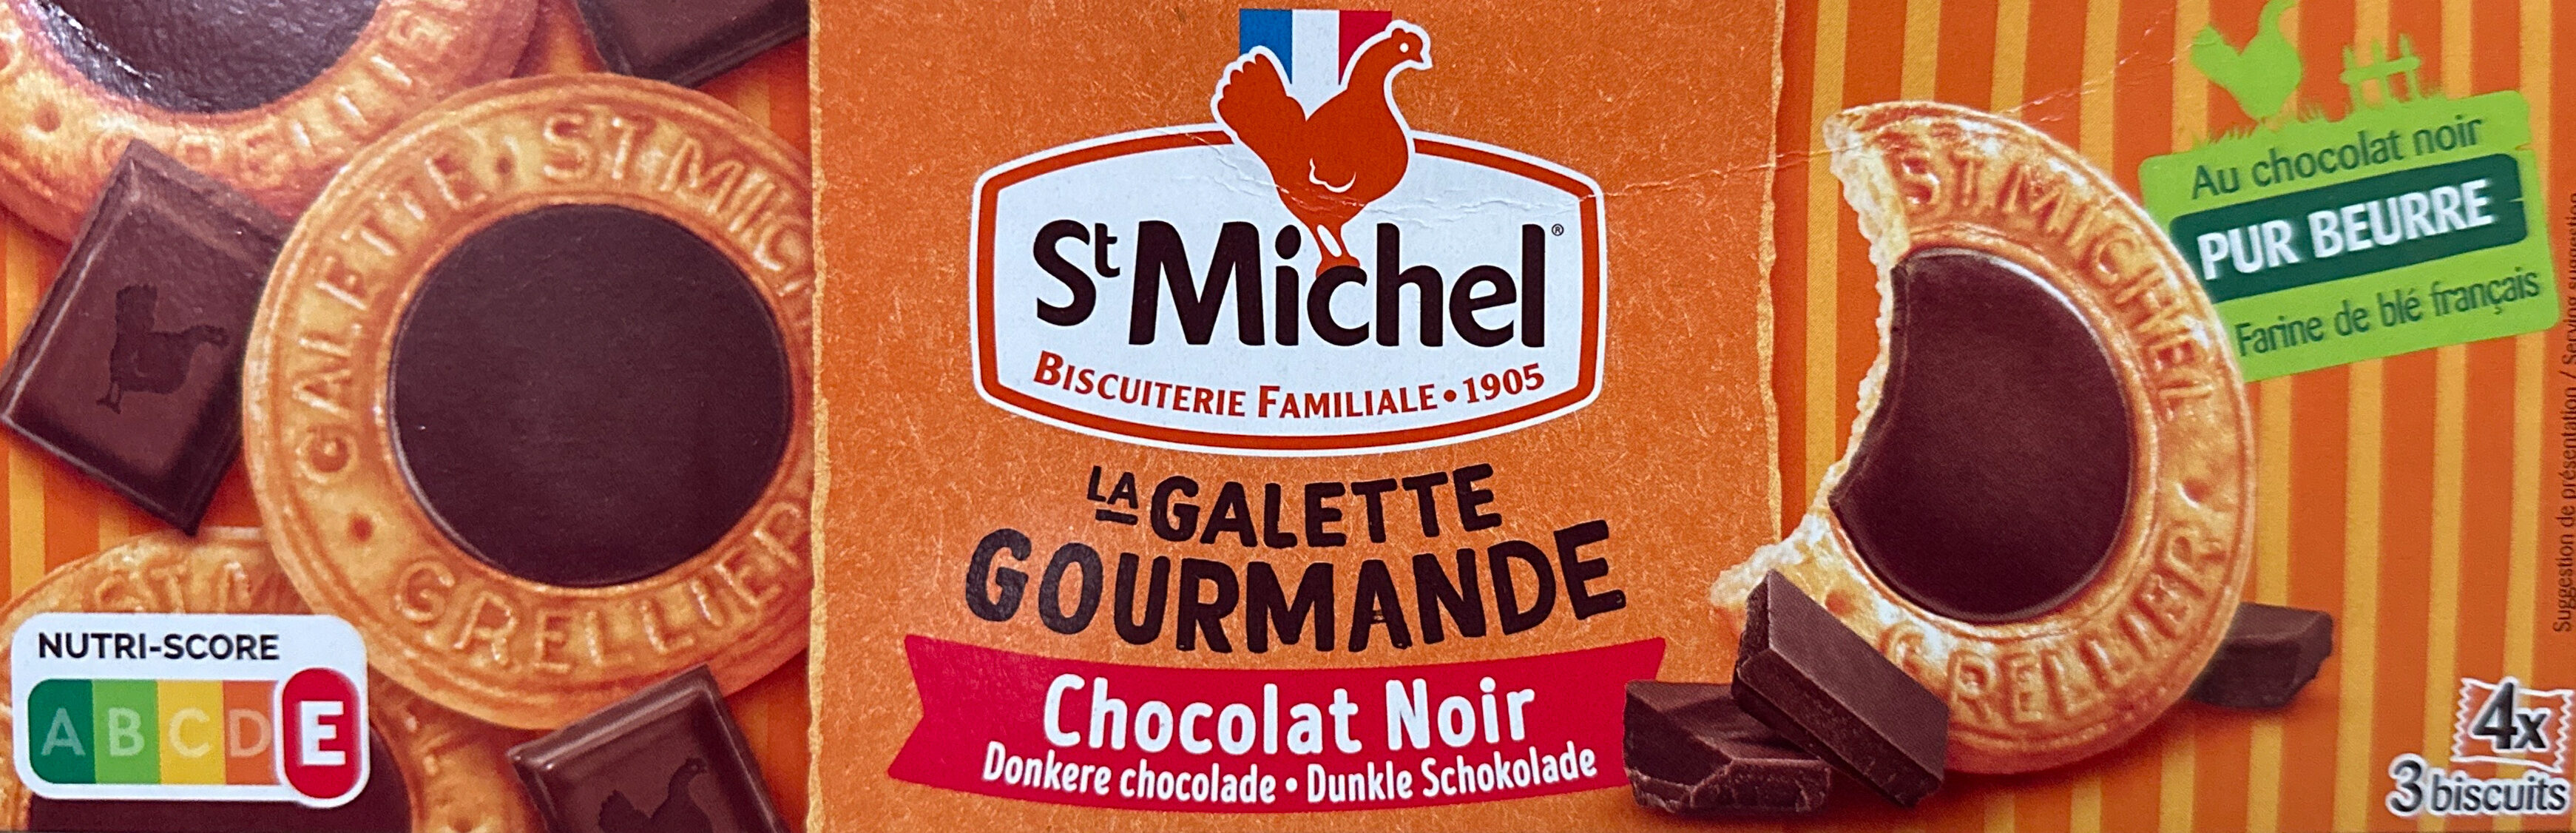 La Galette gourmande chocolat noir - Product - fr